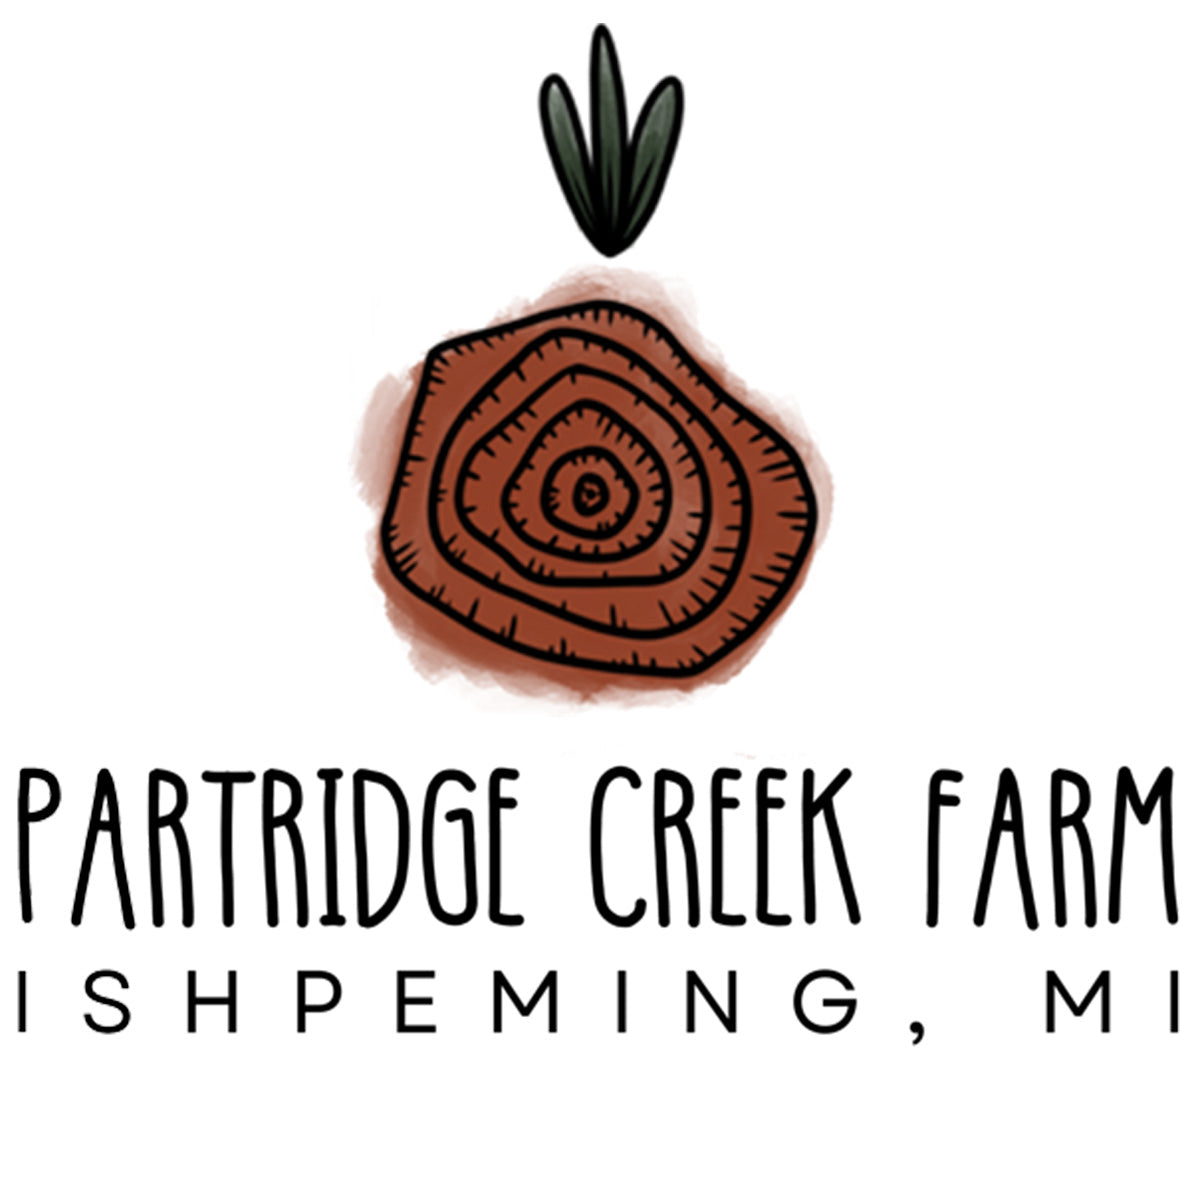 Partridge Creek Farm, Ishpeming, MI